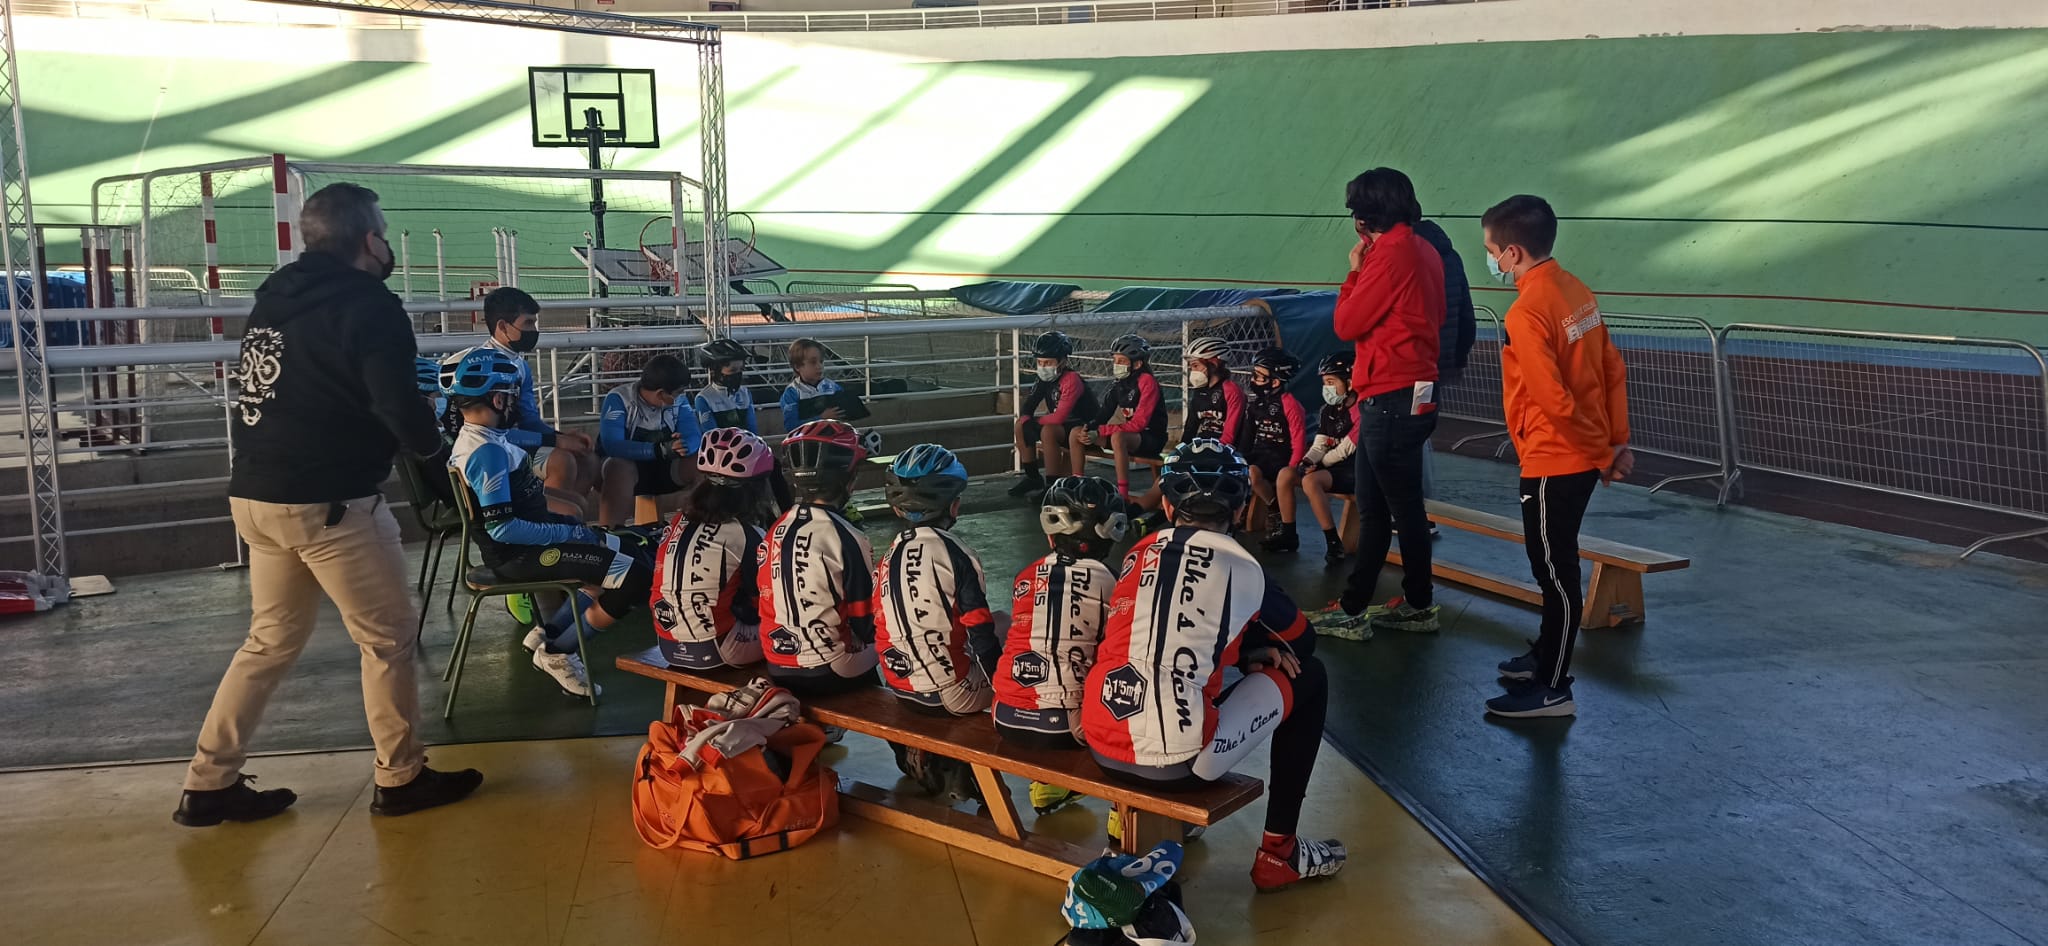 Las Escuelas de la Fundación Contador, Tr3ce Bike y Bikes Ciem pasaron por el velódromo de Galapagar